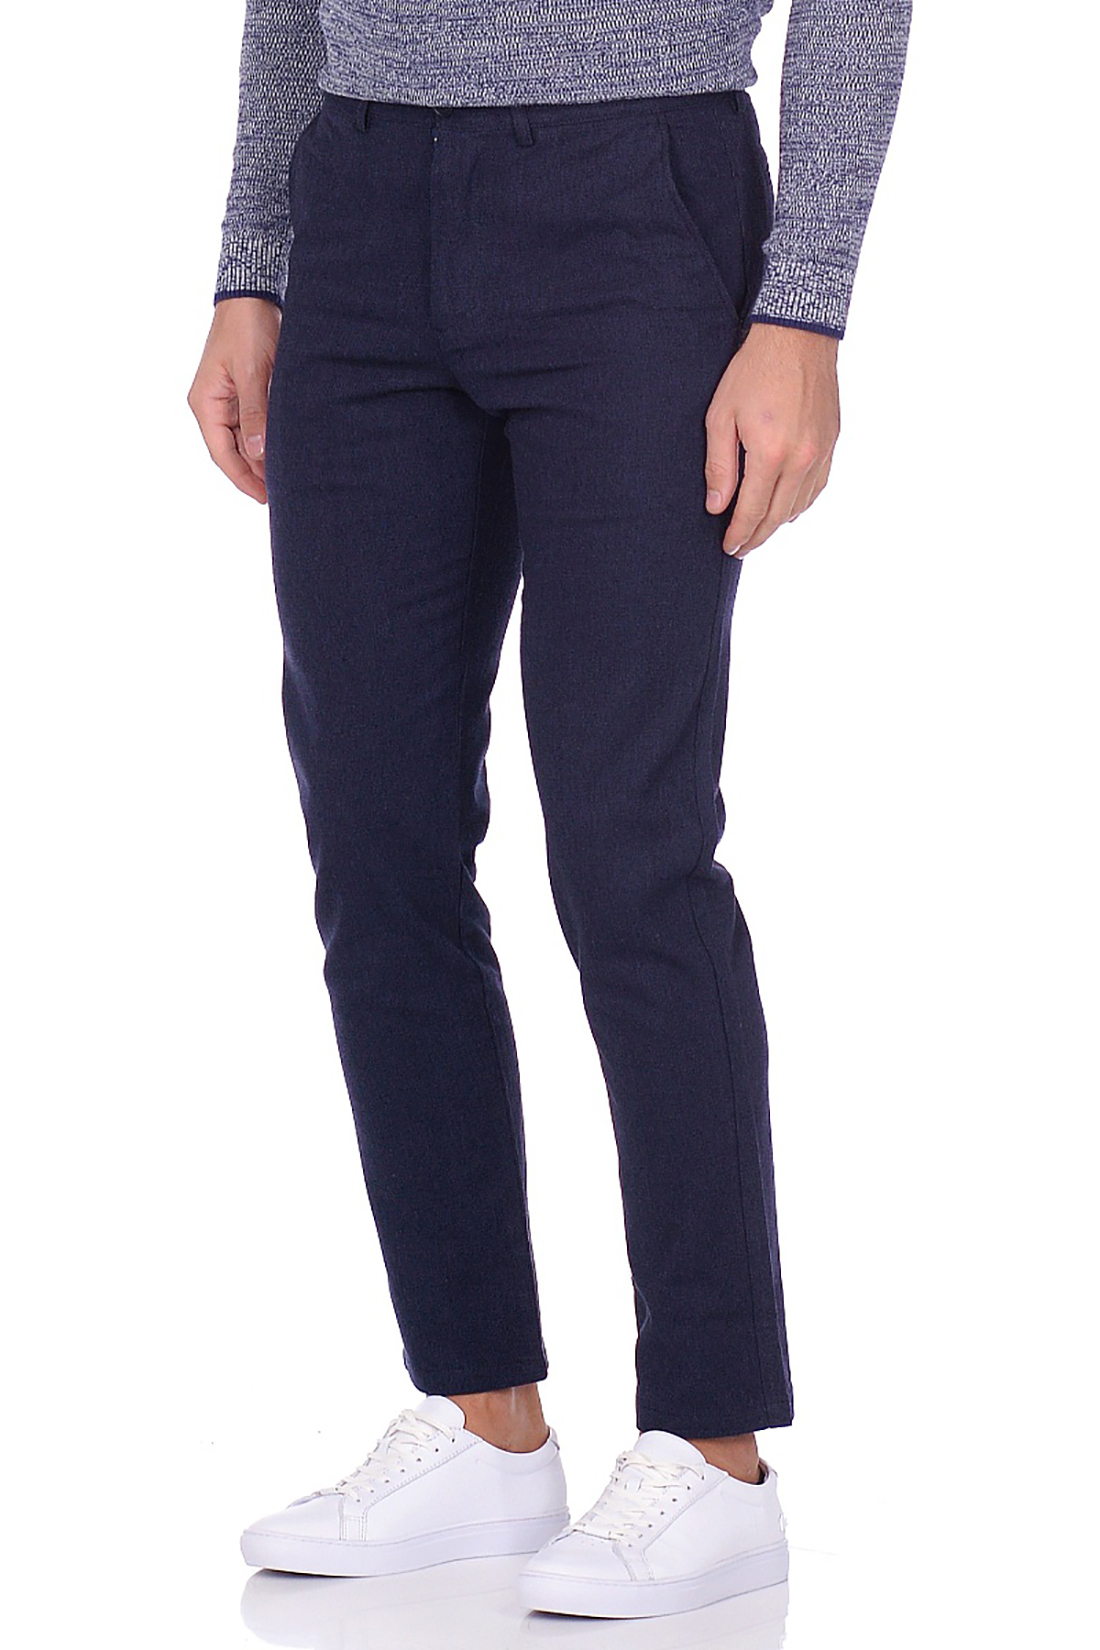 Классические брюки из меланжевого материала (арт. baon B799508), размер XL, цвет синий Классические брюки из меланжевого материала (арт. baon B799508) - фото 4